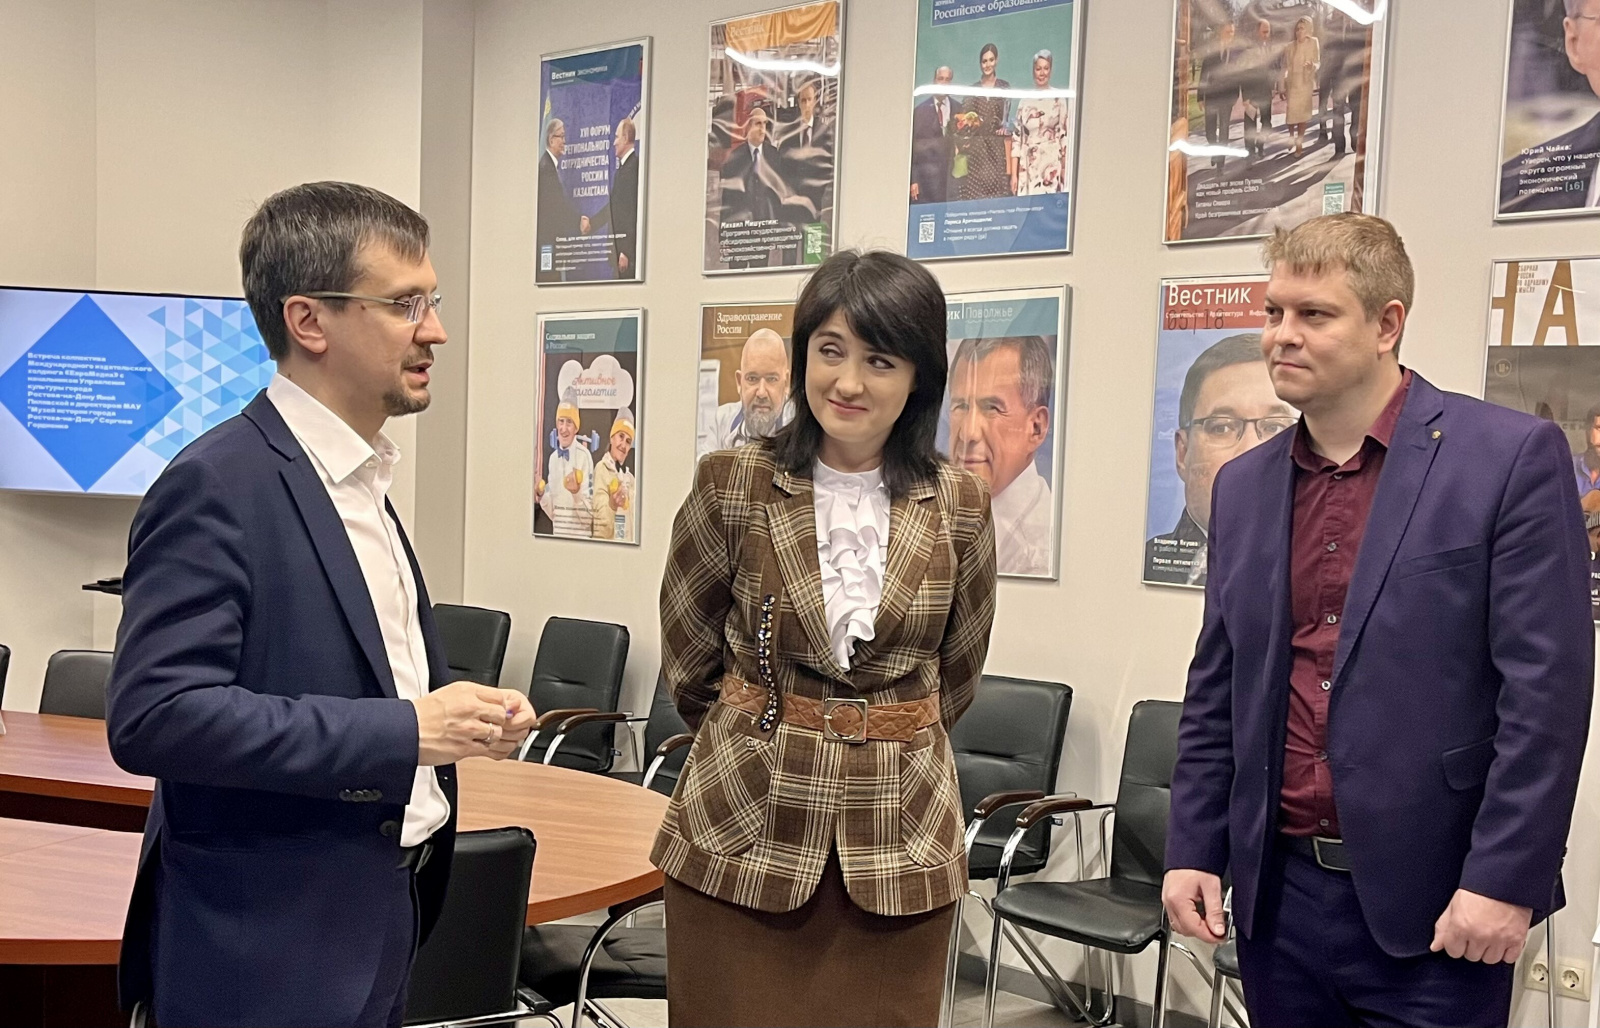 В пресс-центре МИД «ЕвроМедиа» прошла встреча с Яной Пилявской и Сергеем Гордиенко, в рамках которой было подписано соглашение о сотрудничестве с Управлением культуры Ростова-на-Дону. ЕвроМедиа